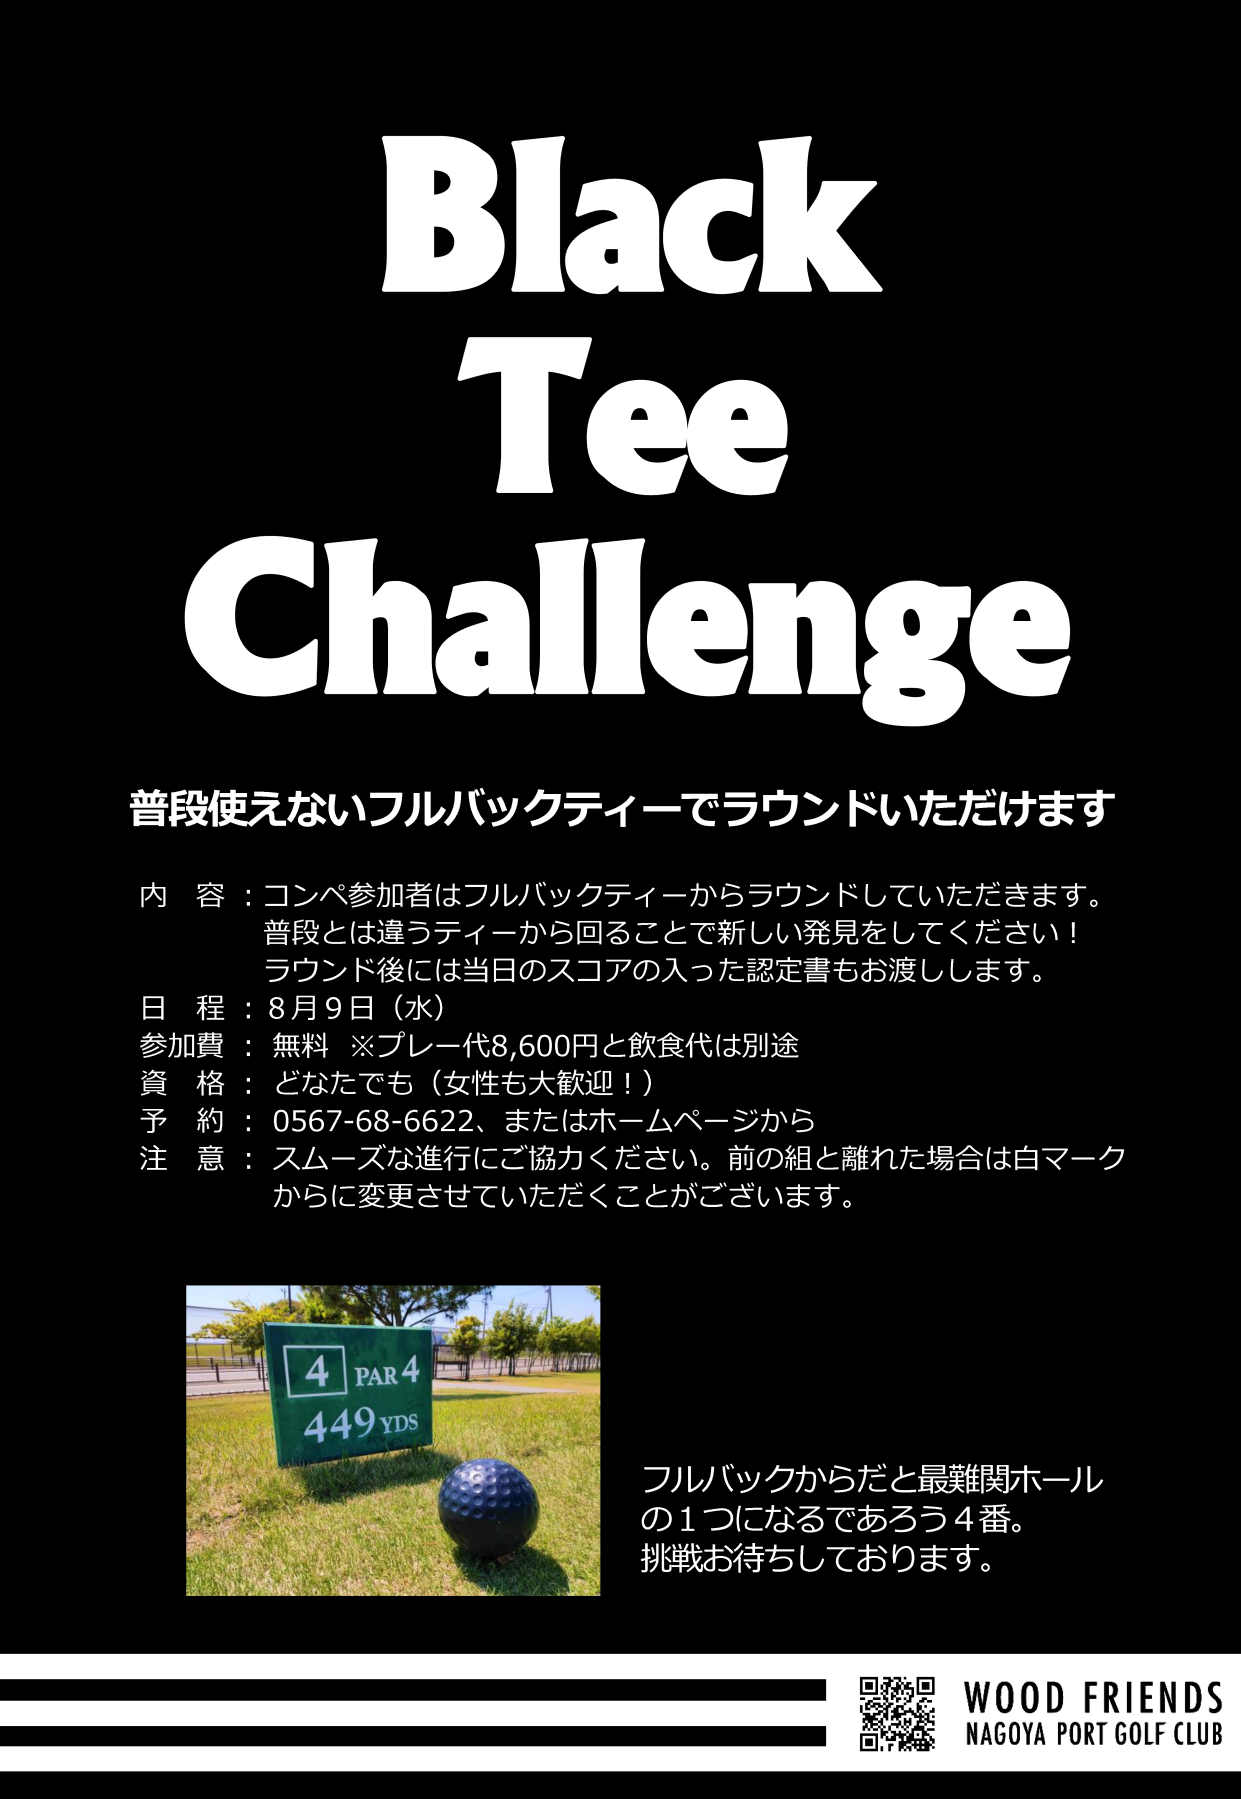 Black tee challenge.png